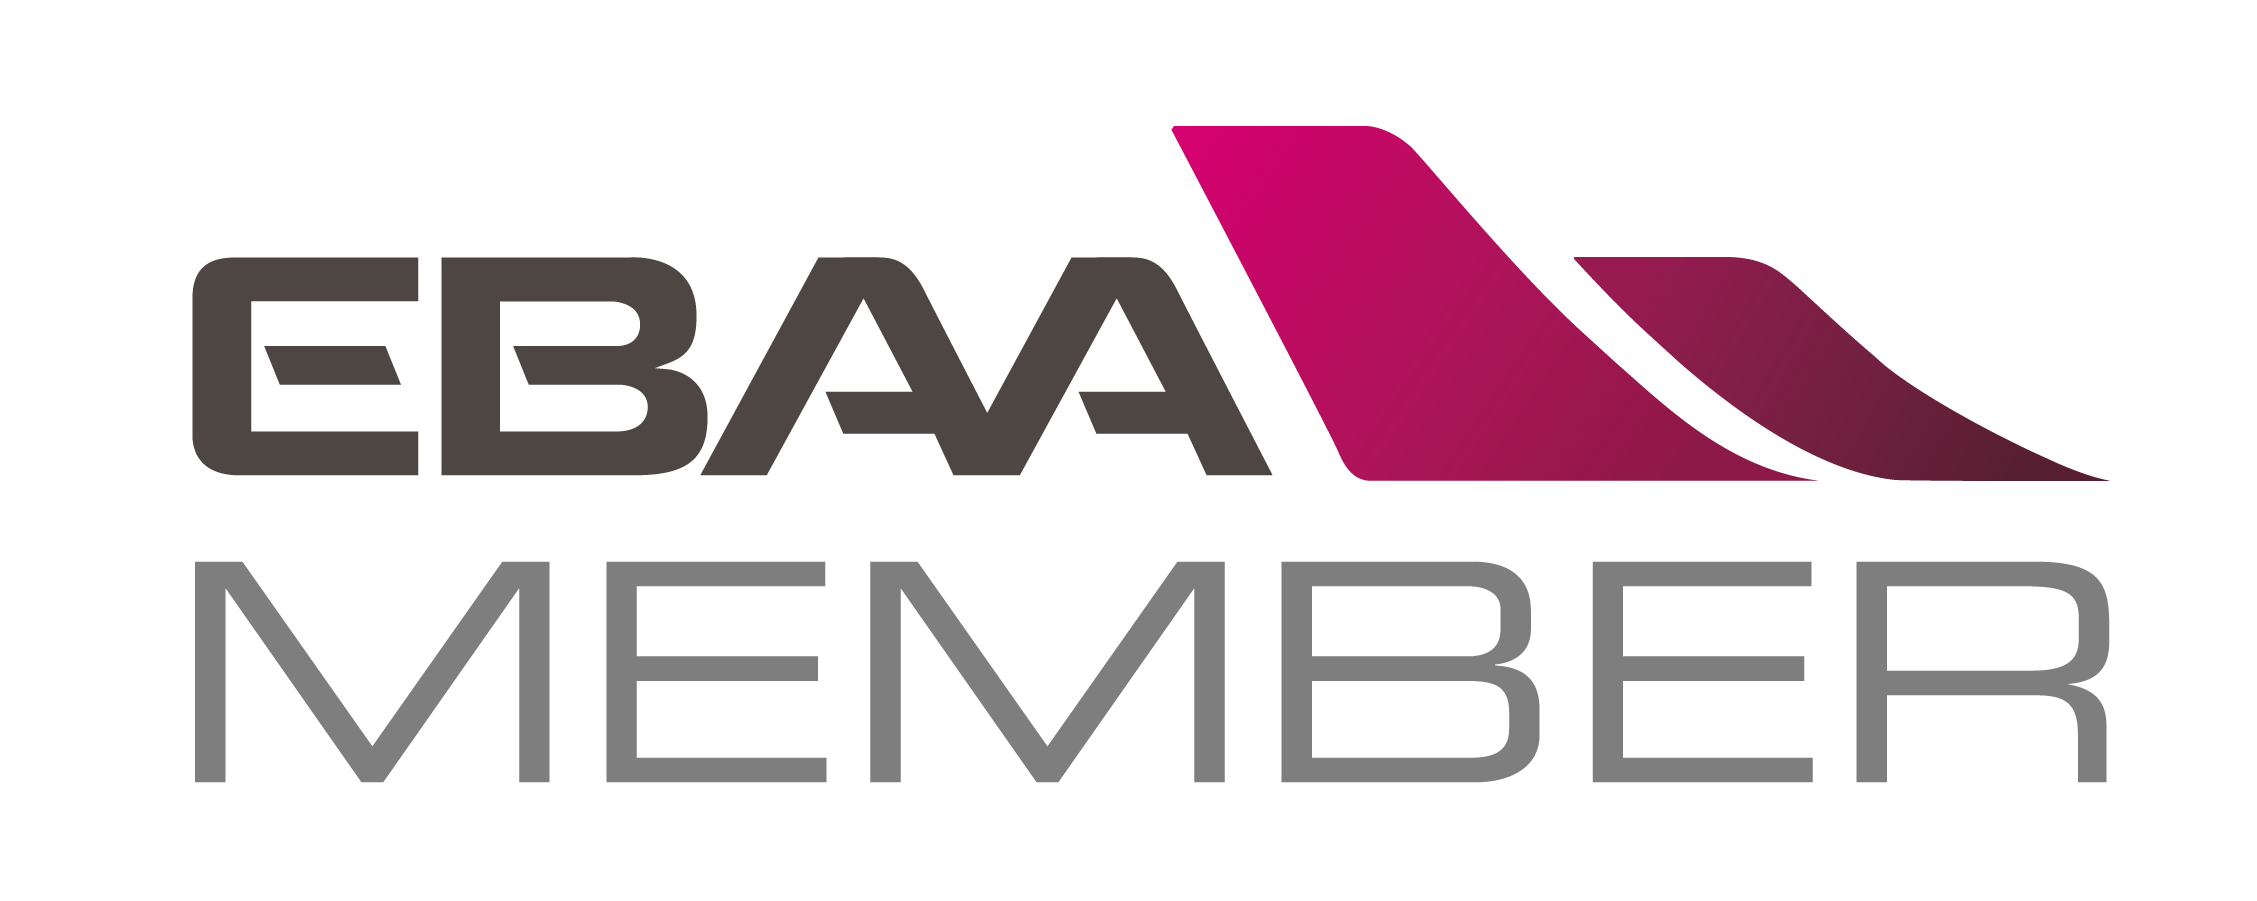 EBAA Members logo